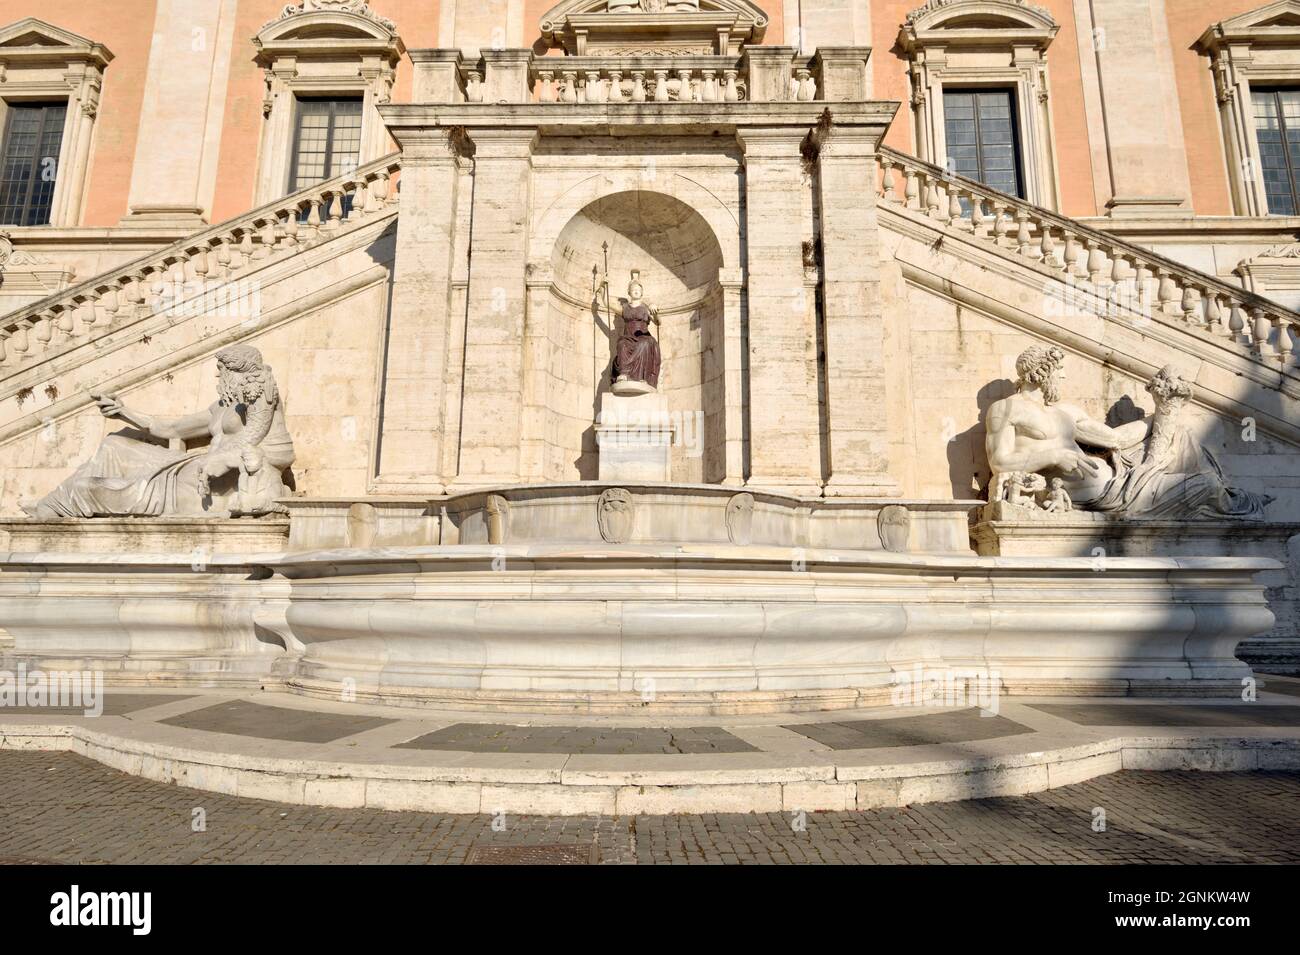 Italien, Rom, Piazza del Campidoglio, Palazzo Senatorio, Treppe mit der Statue der römischen Göttin Roma, ursprünglich Minerva (1.. Jh. n. Chr.) Stockfoto